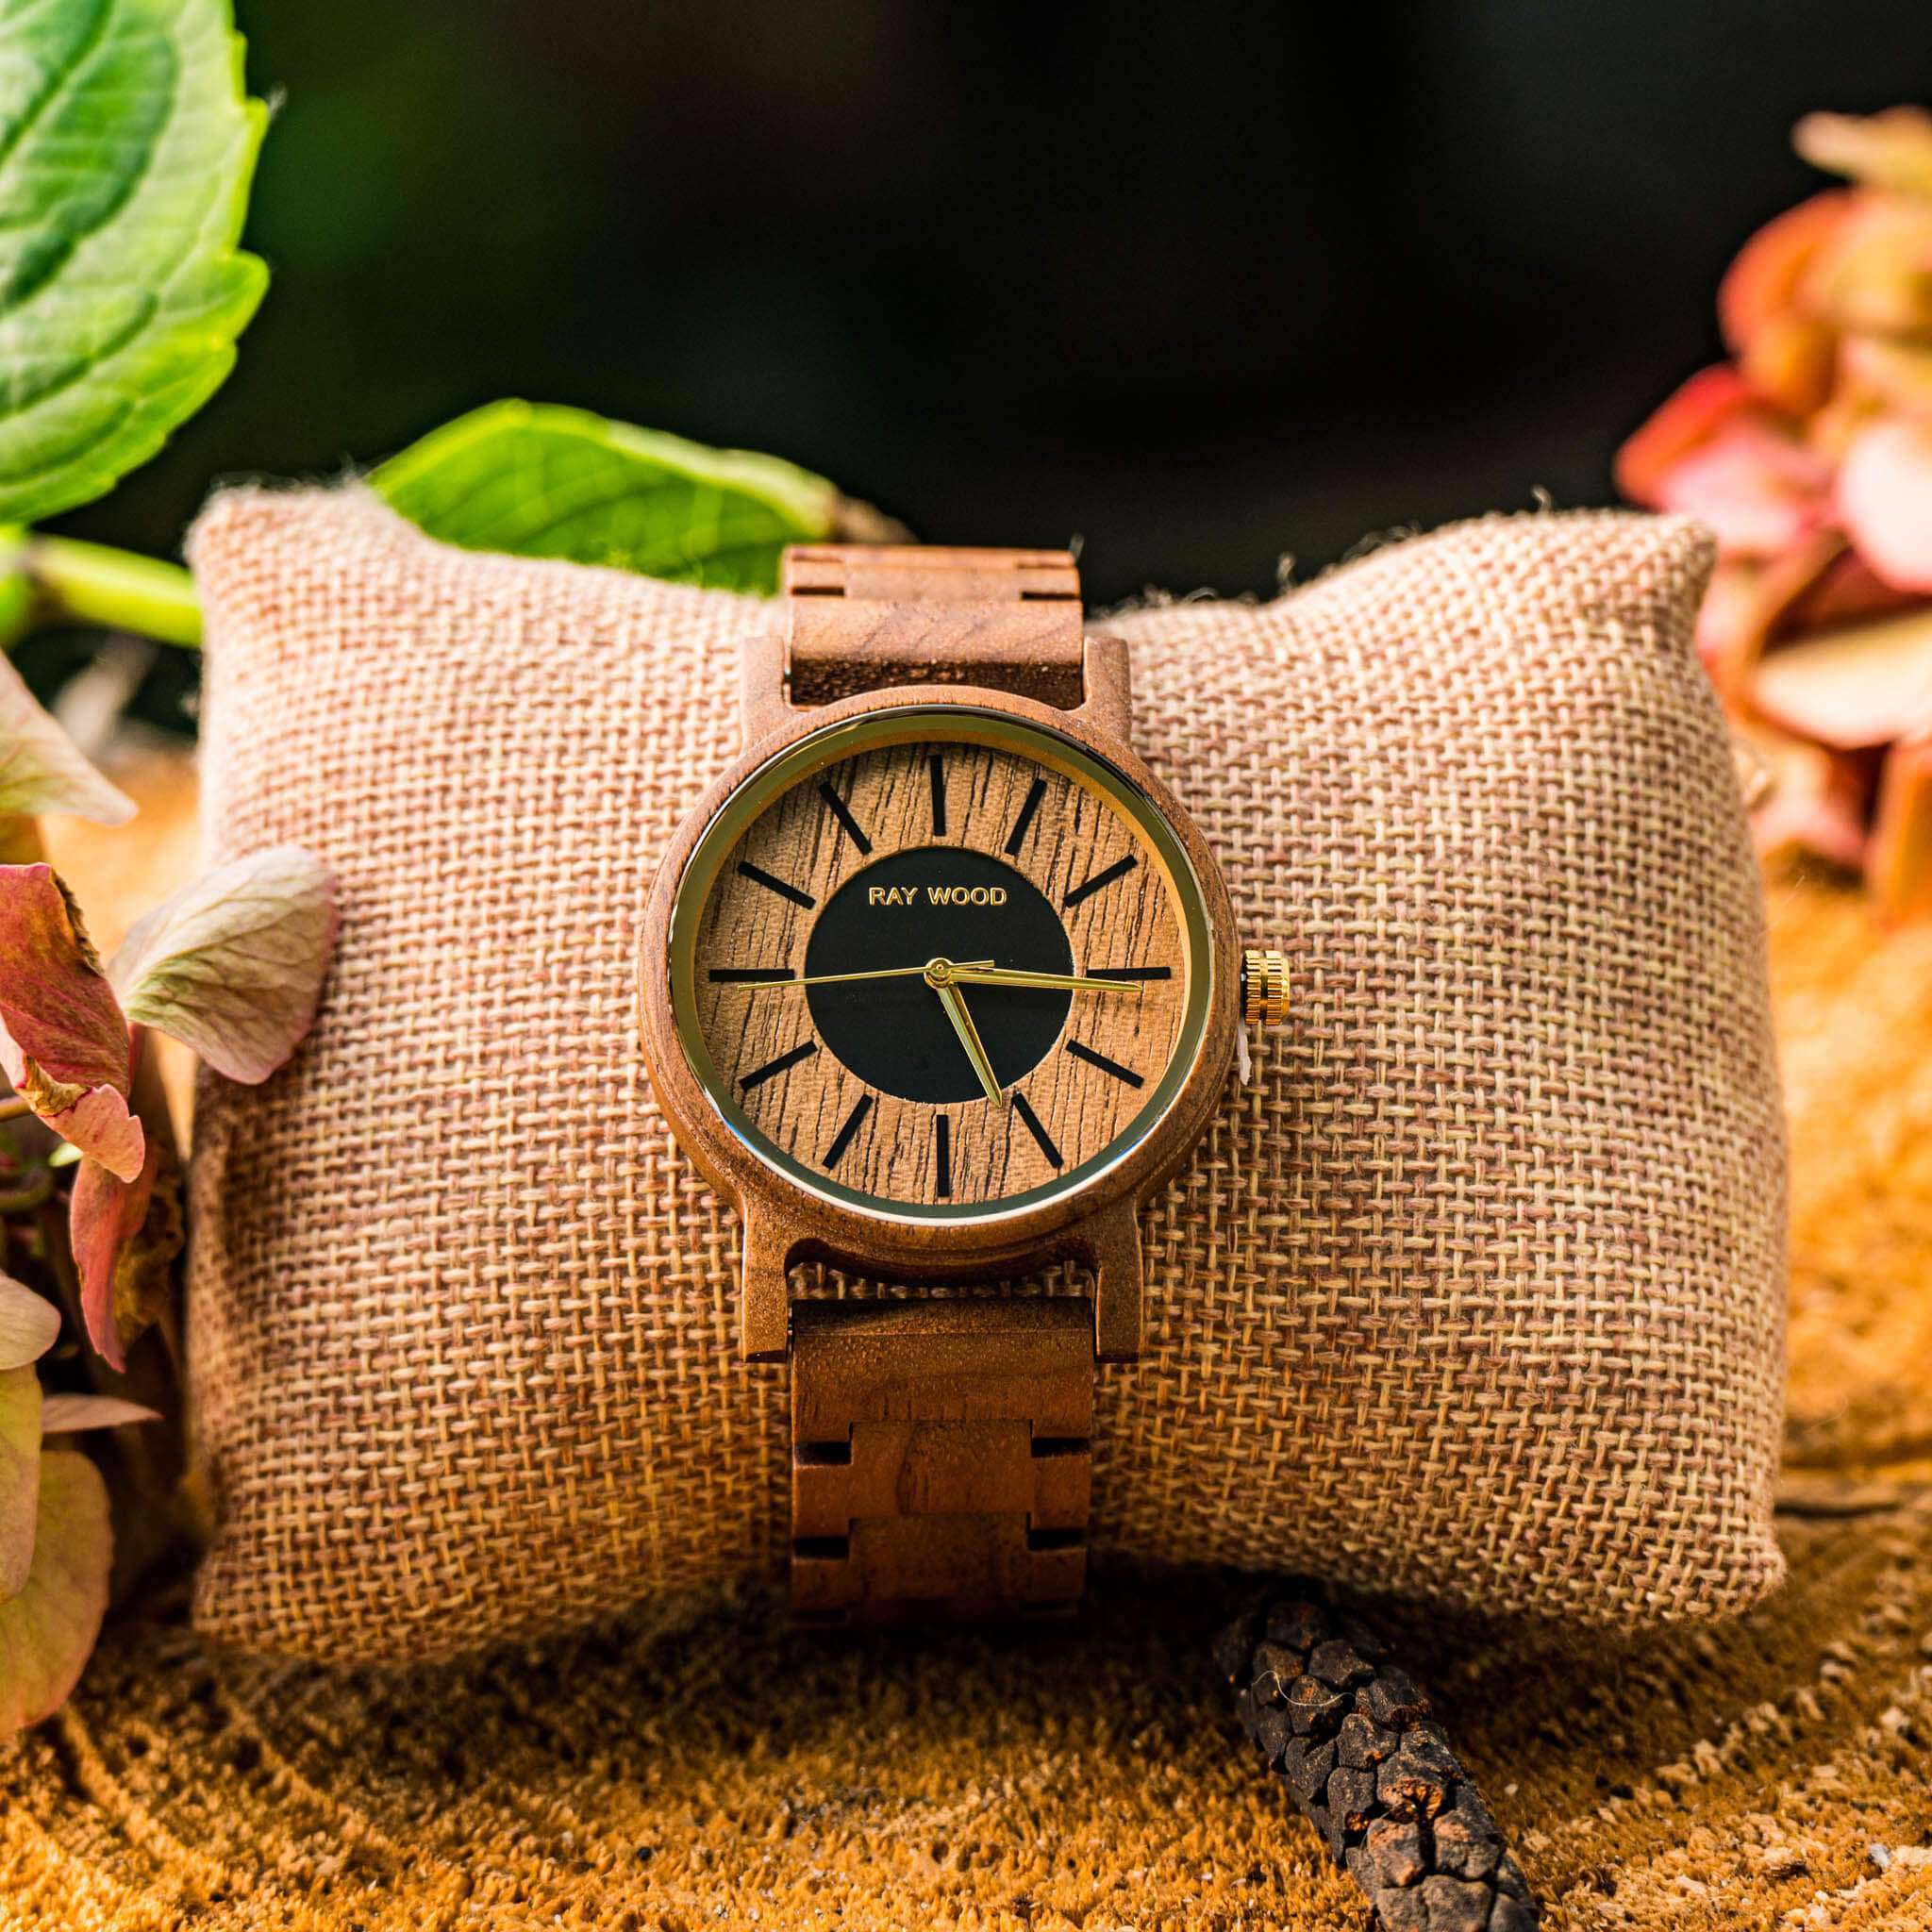 Ster-walnutwood-raywood watch